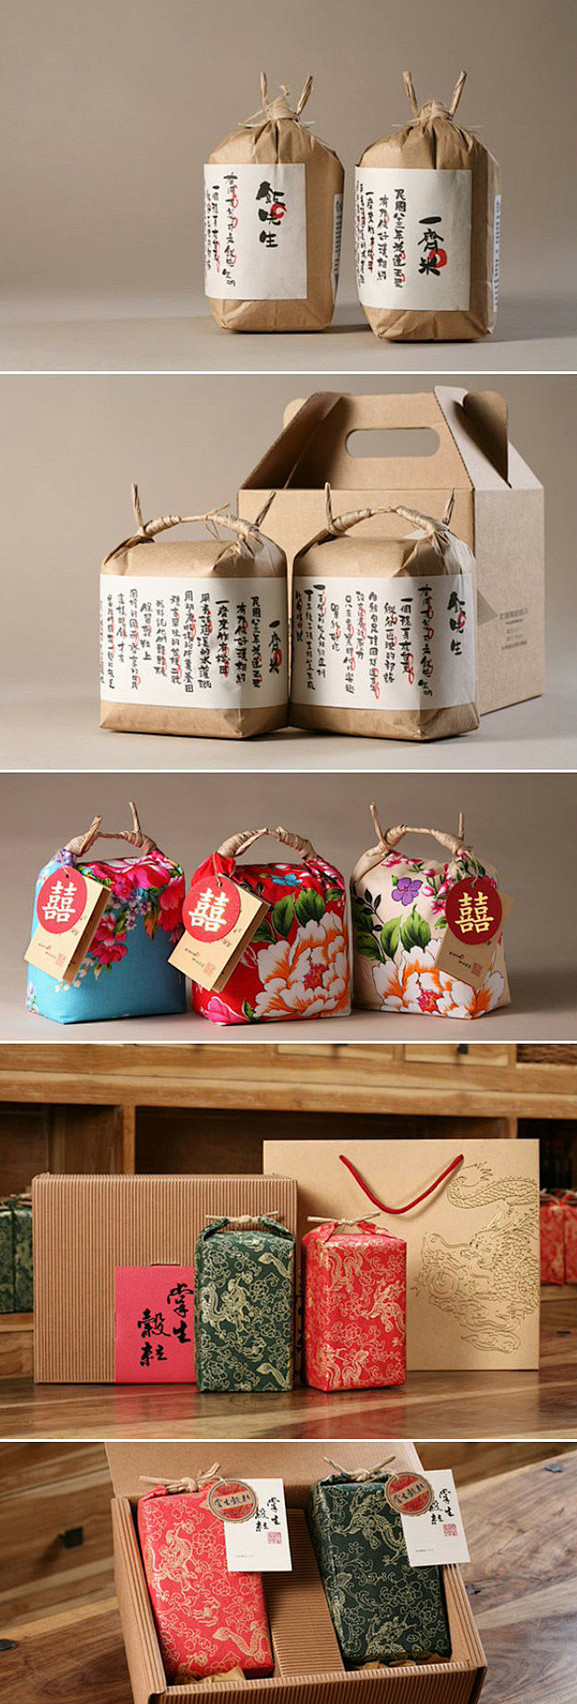 台湾食品包装设计——大米包装—精诚智美